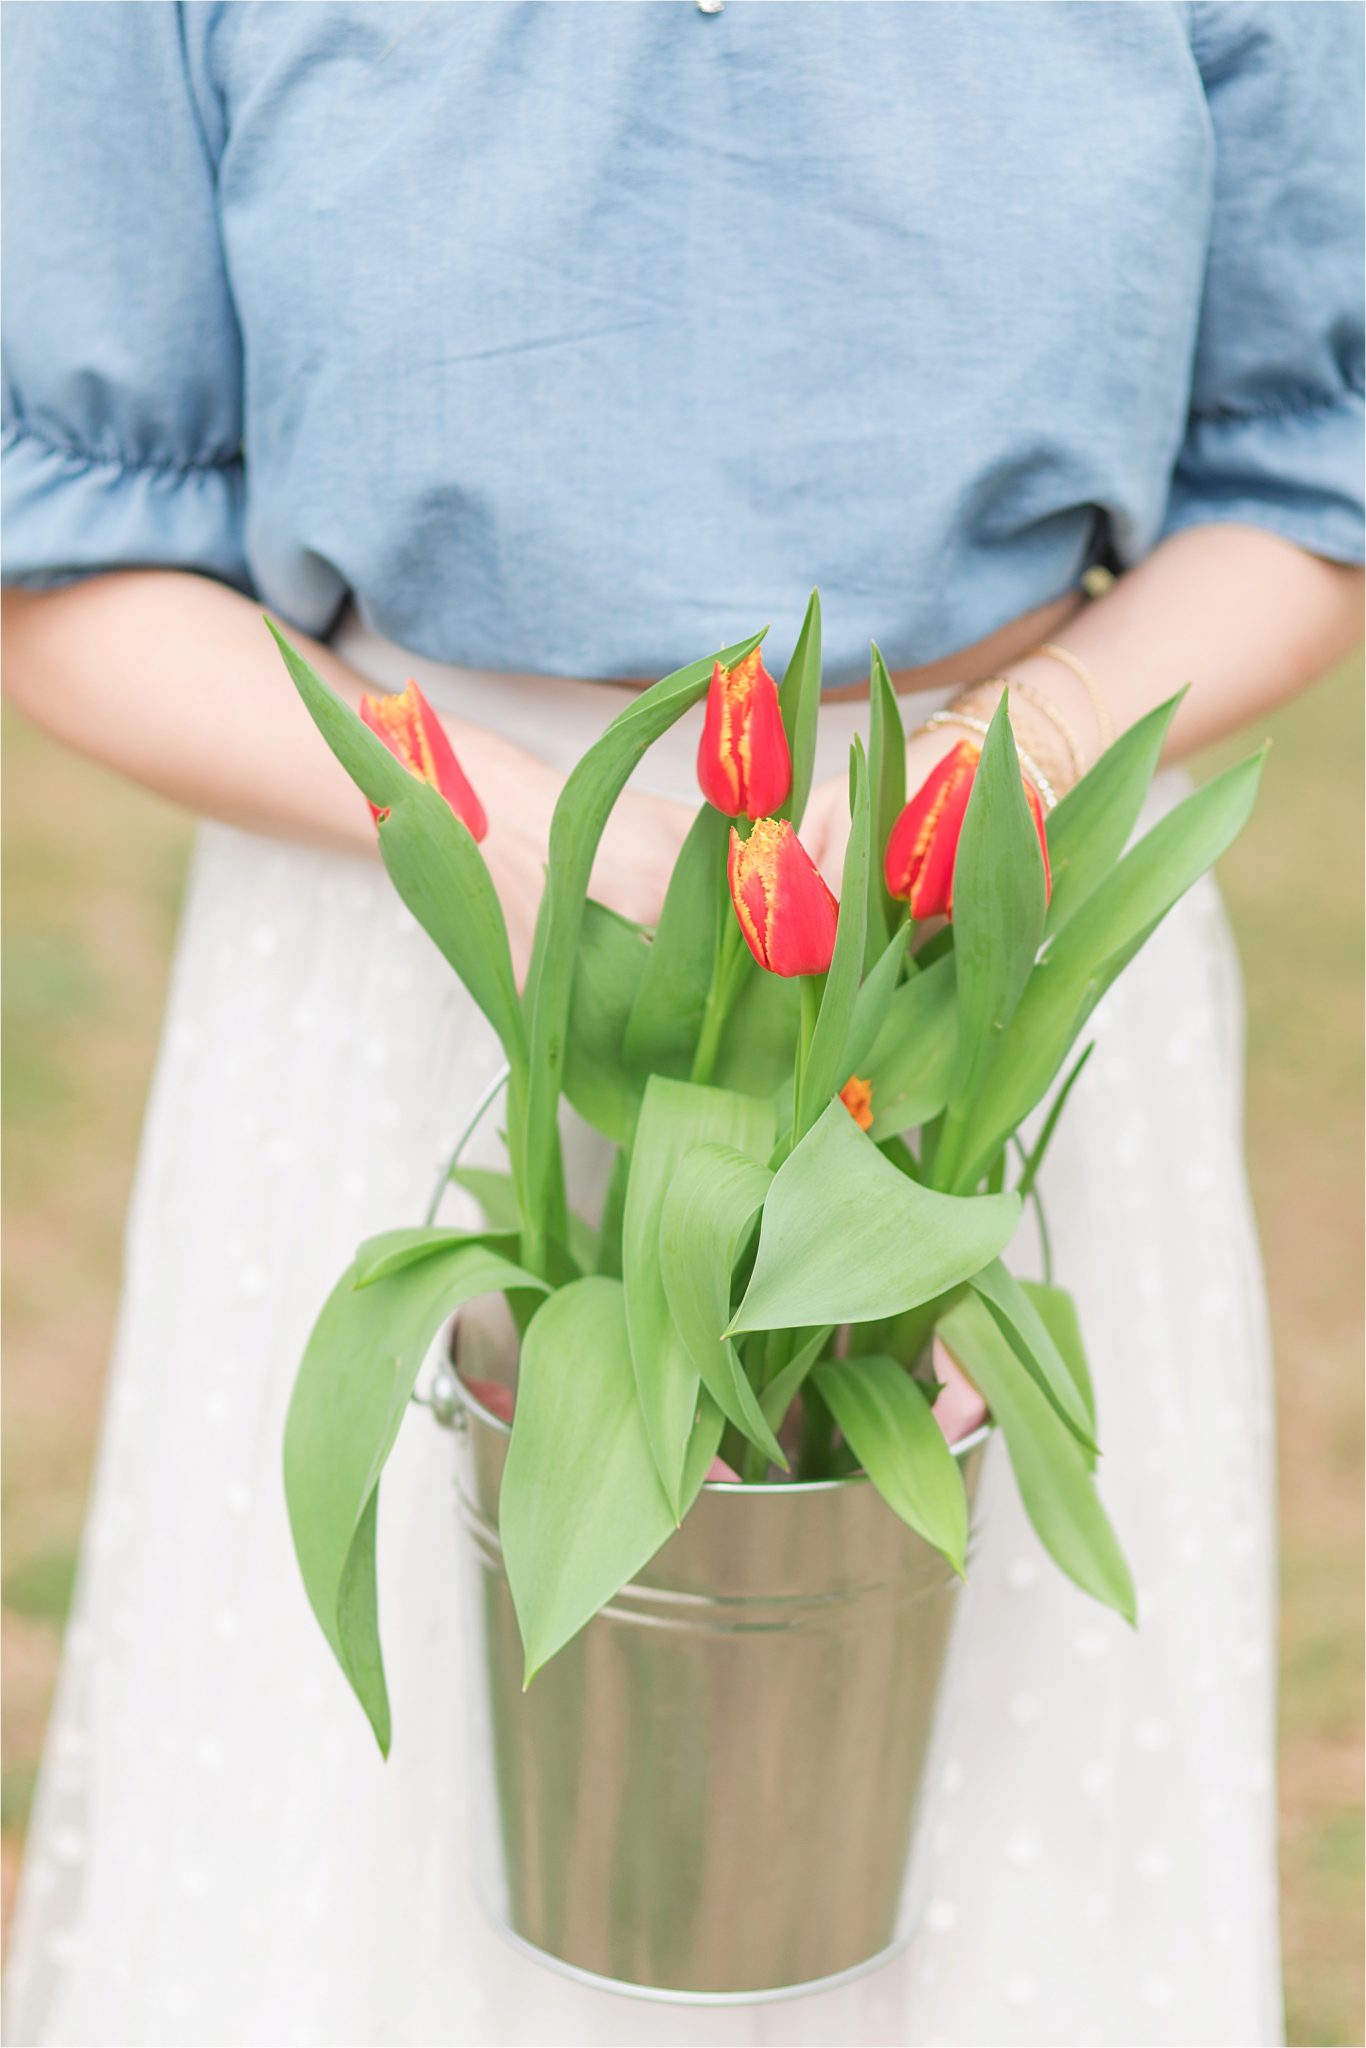 Auburn-Alabama-wedding-photographer-engagement-tulips-potted-plants